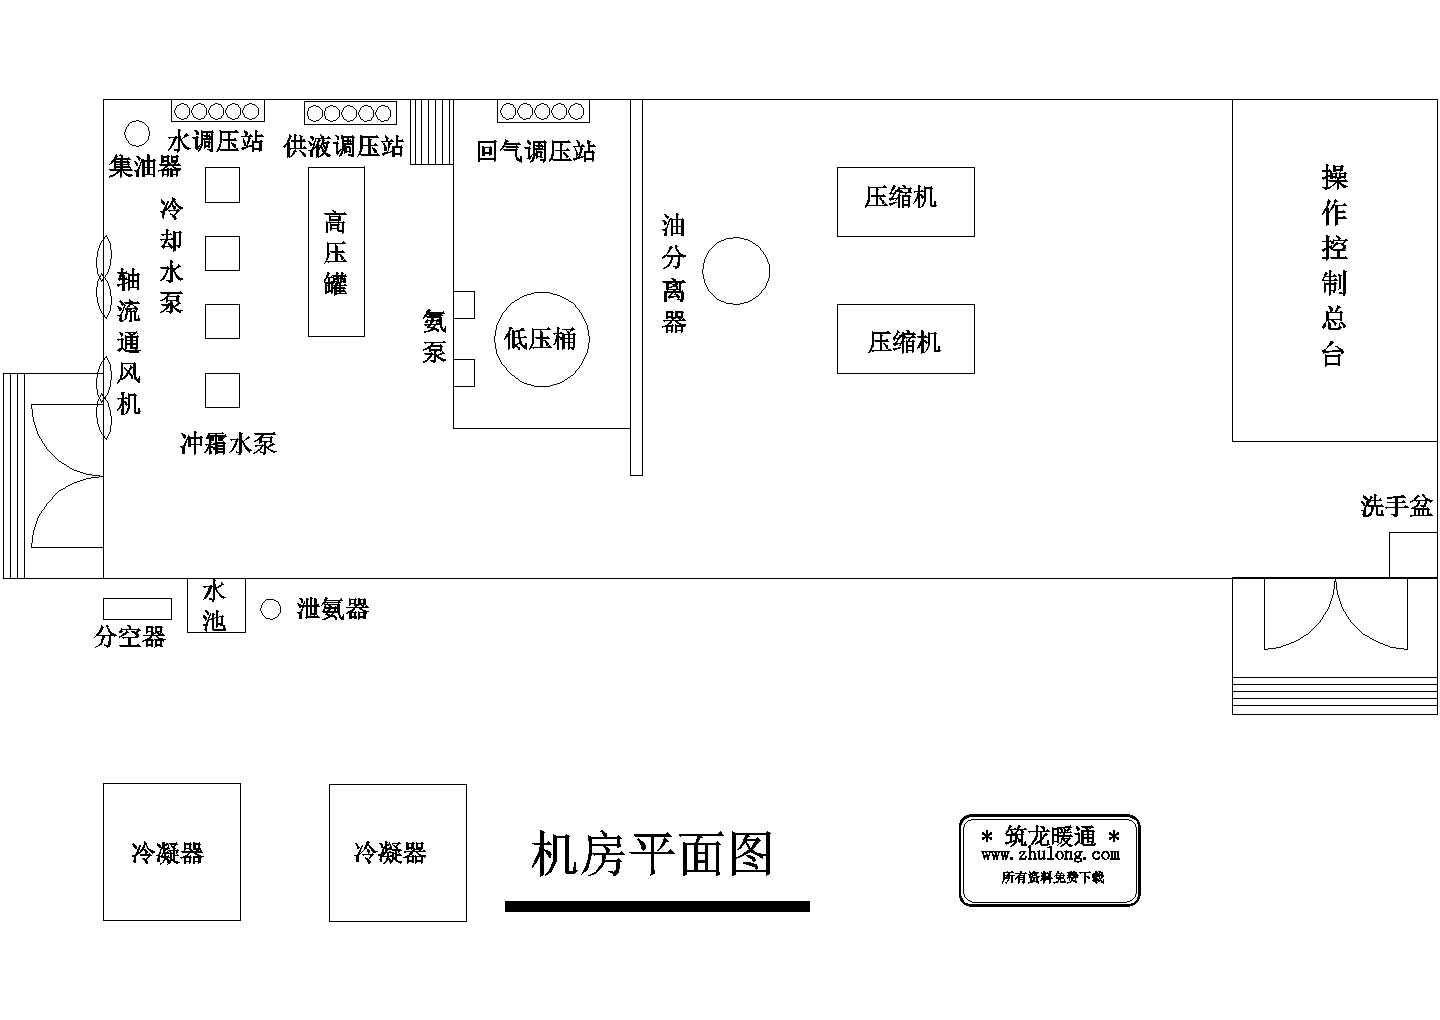 厂房设计_某生鲜公司厂房冷库设计全套施工cad图纸(含机房平面布置图，系统3简化图)